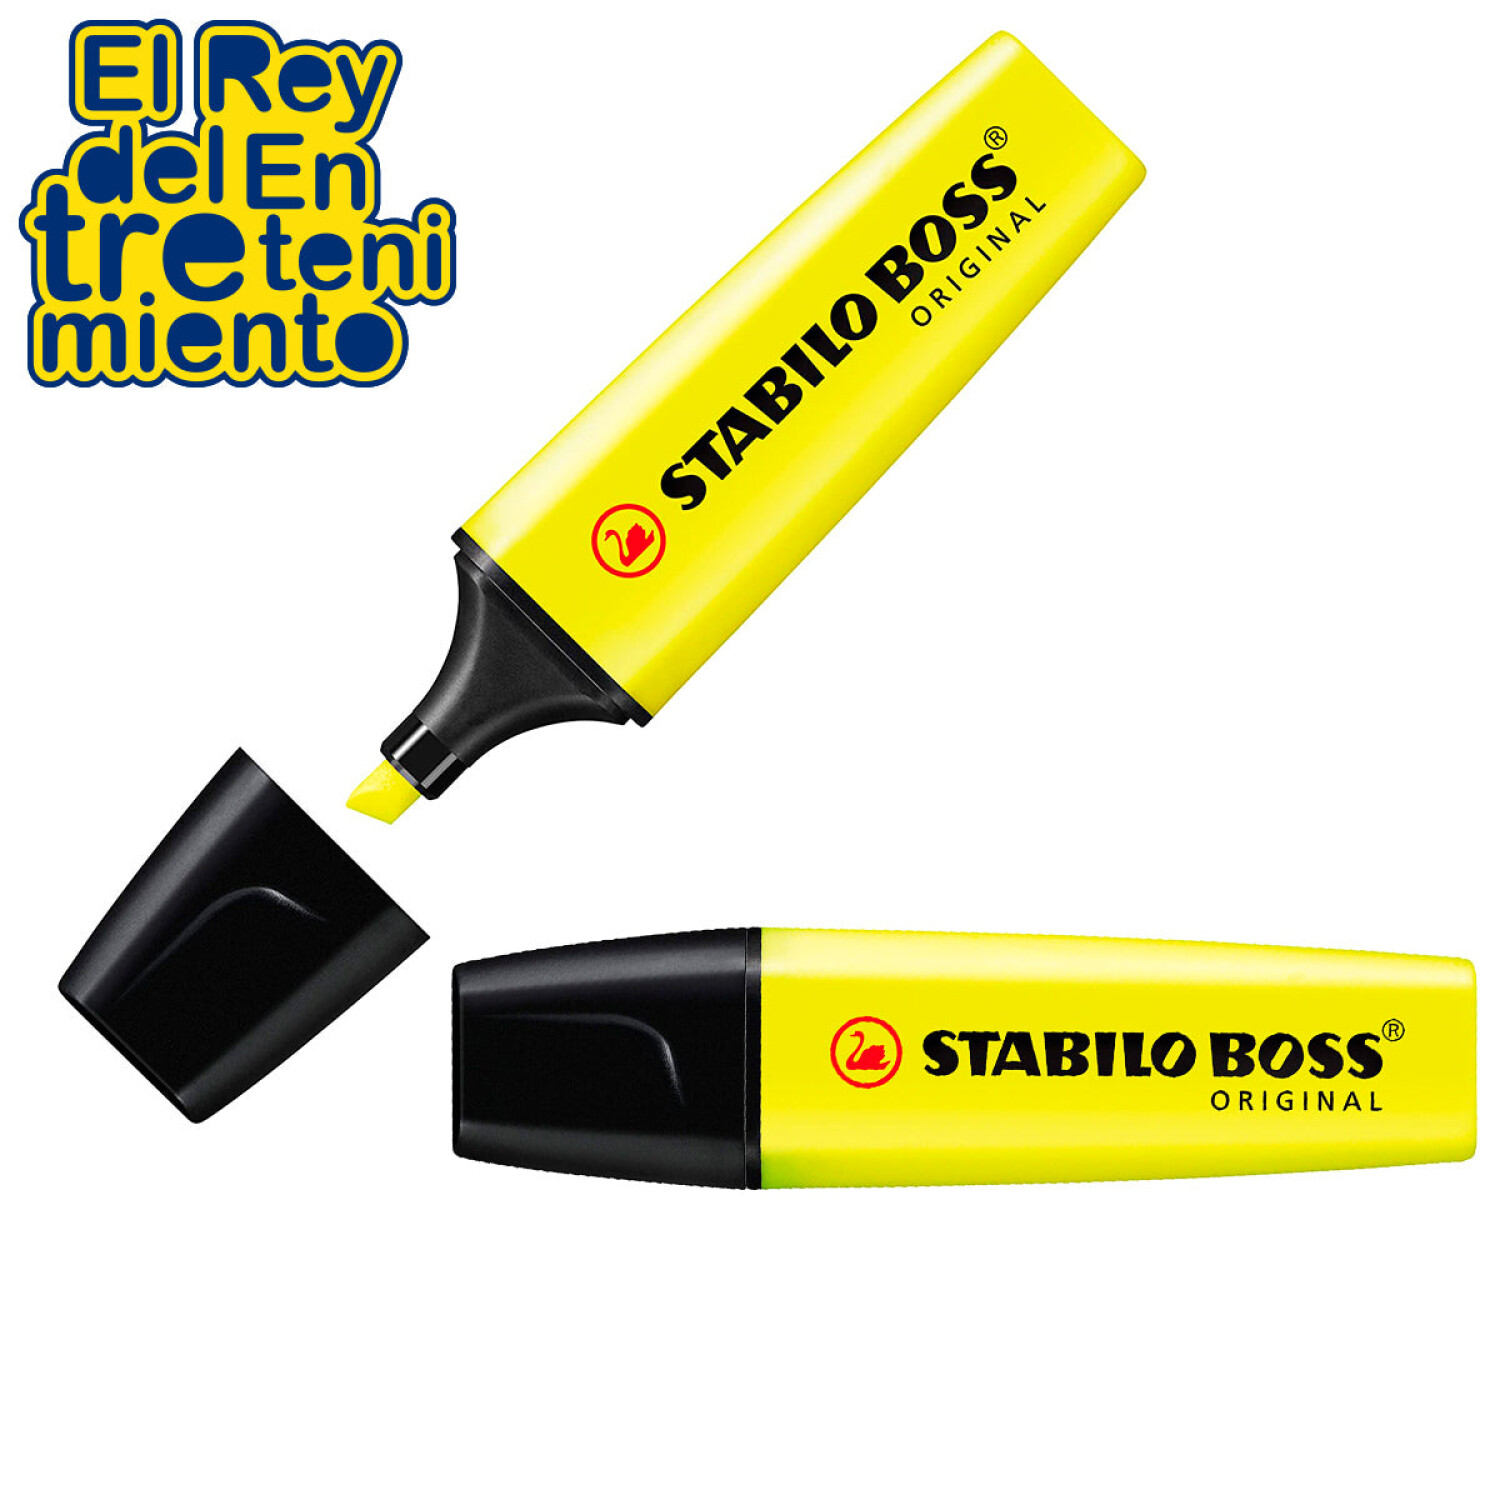 Subrayador Stabilo Boss amarillo - Blister de 4 en